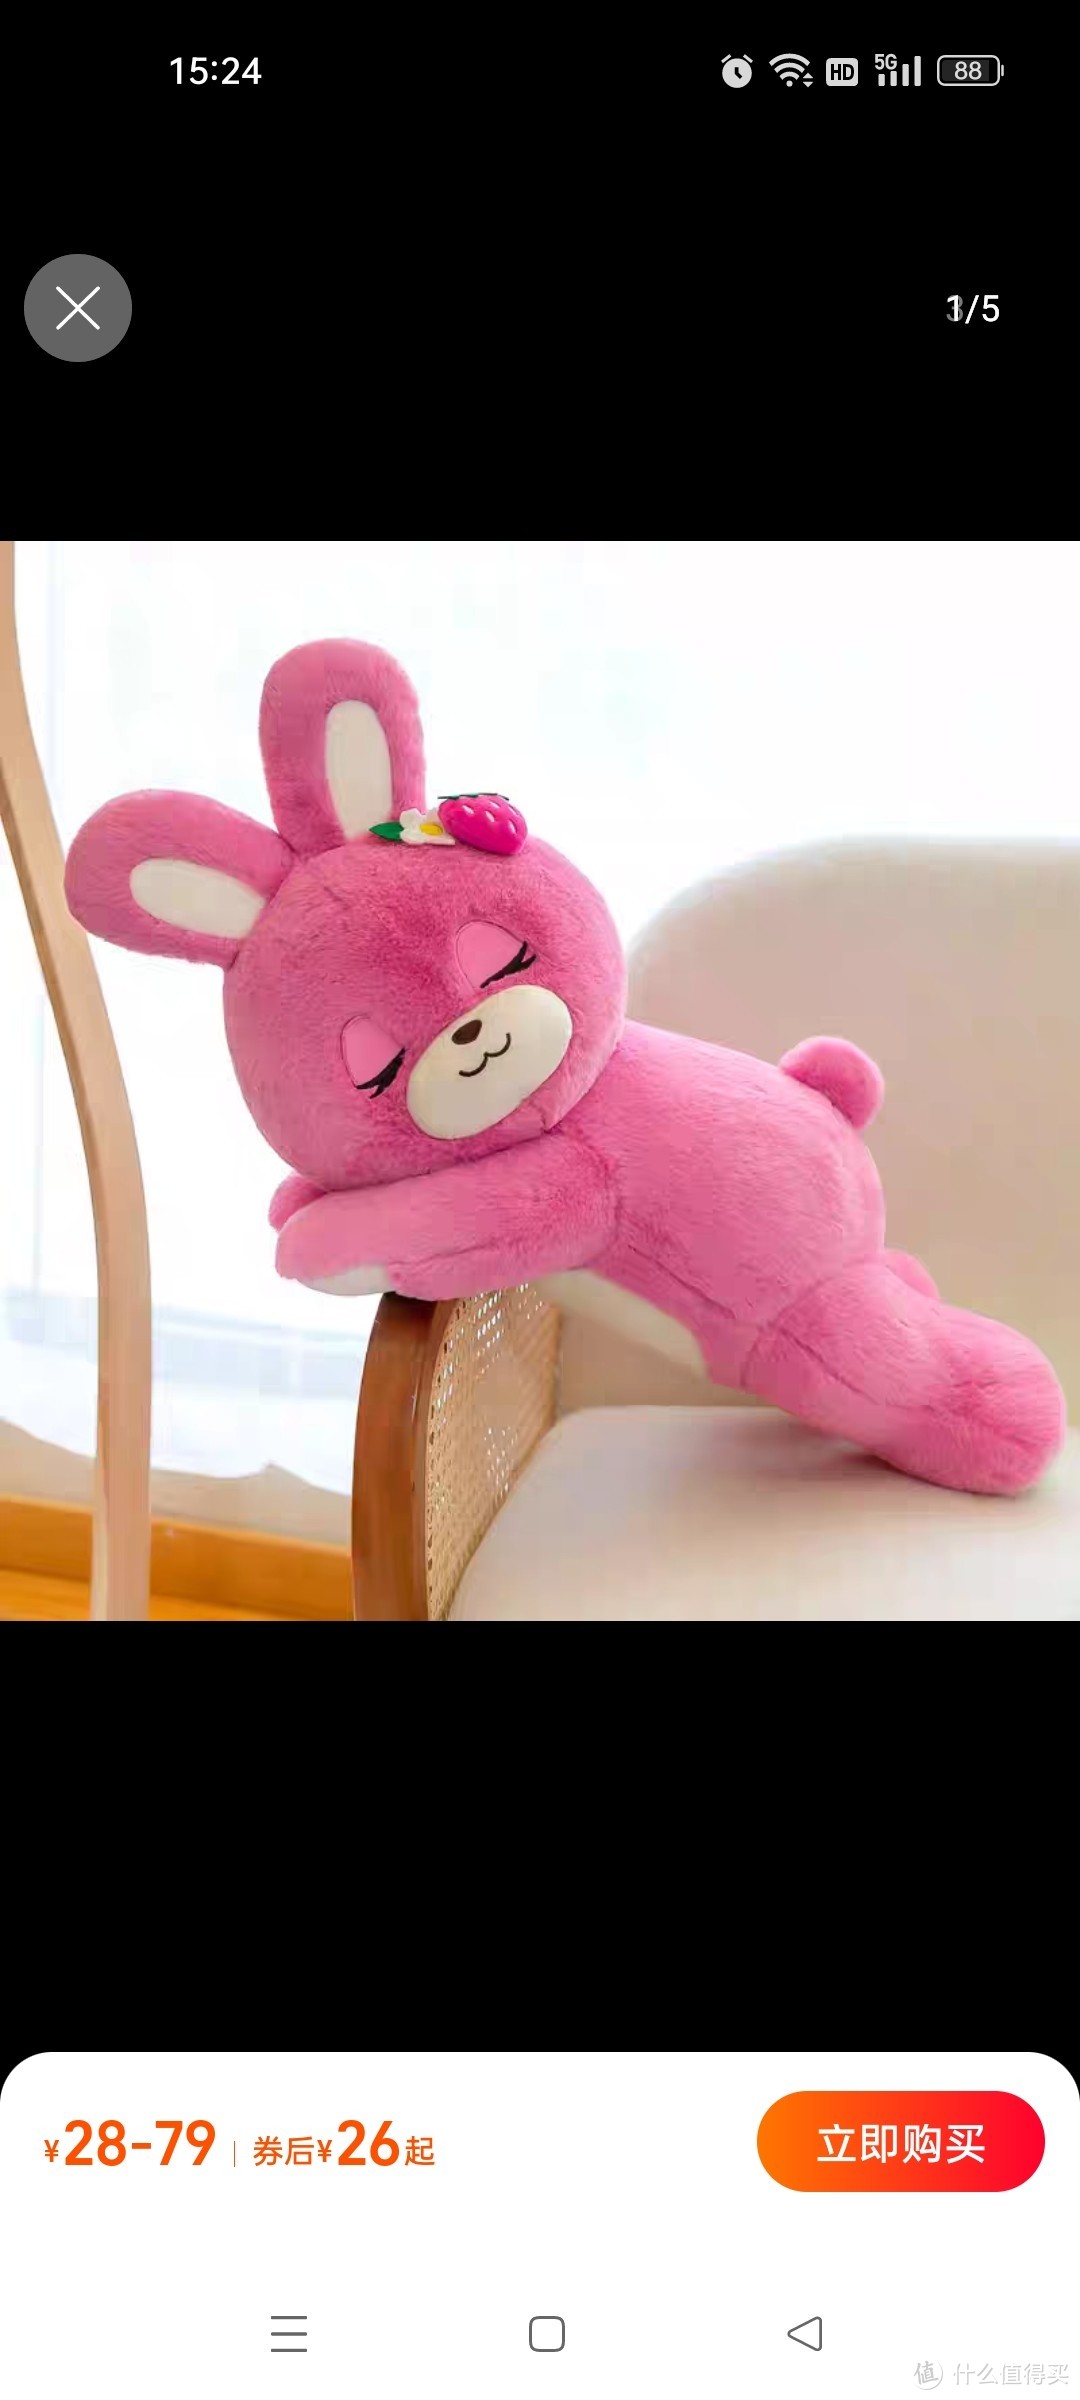 可爱草莓趴趴兔子抱枕女生睡觉夹腿毛绒玩具抱抱熊玩偶布娃娃礼物